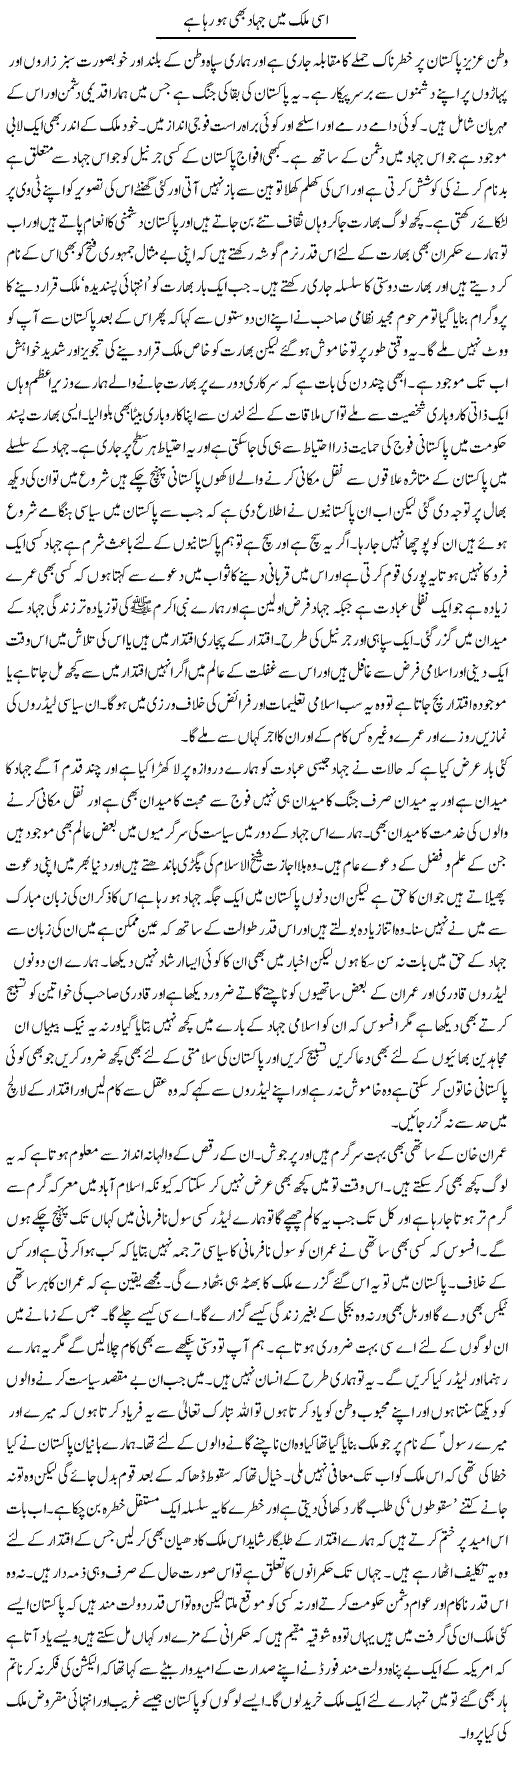 Isi Mulk Main Jihad Bhi Ho Raha Hai | Abdul Qadir Hassan | Daily Urdu Columns